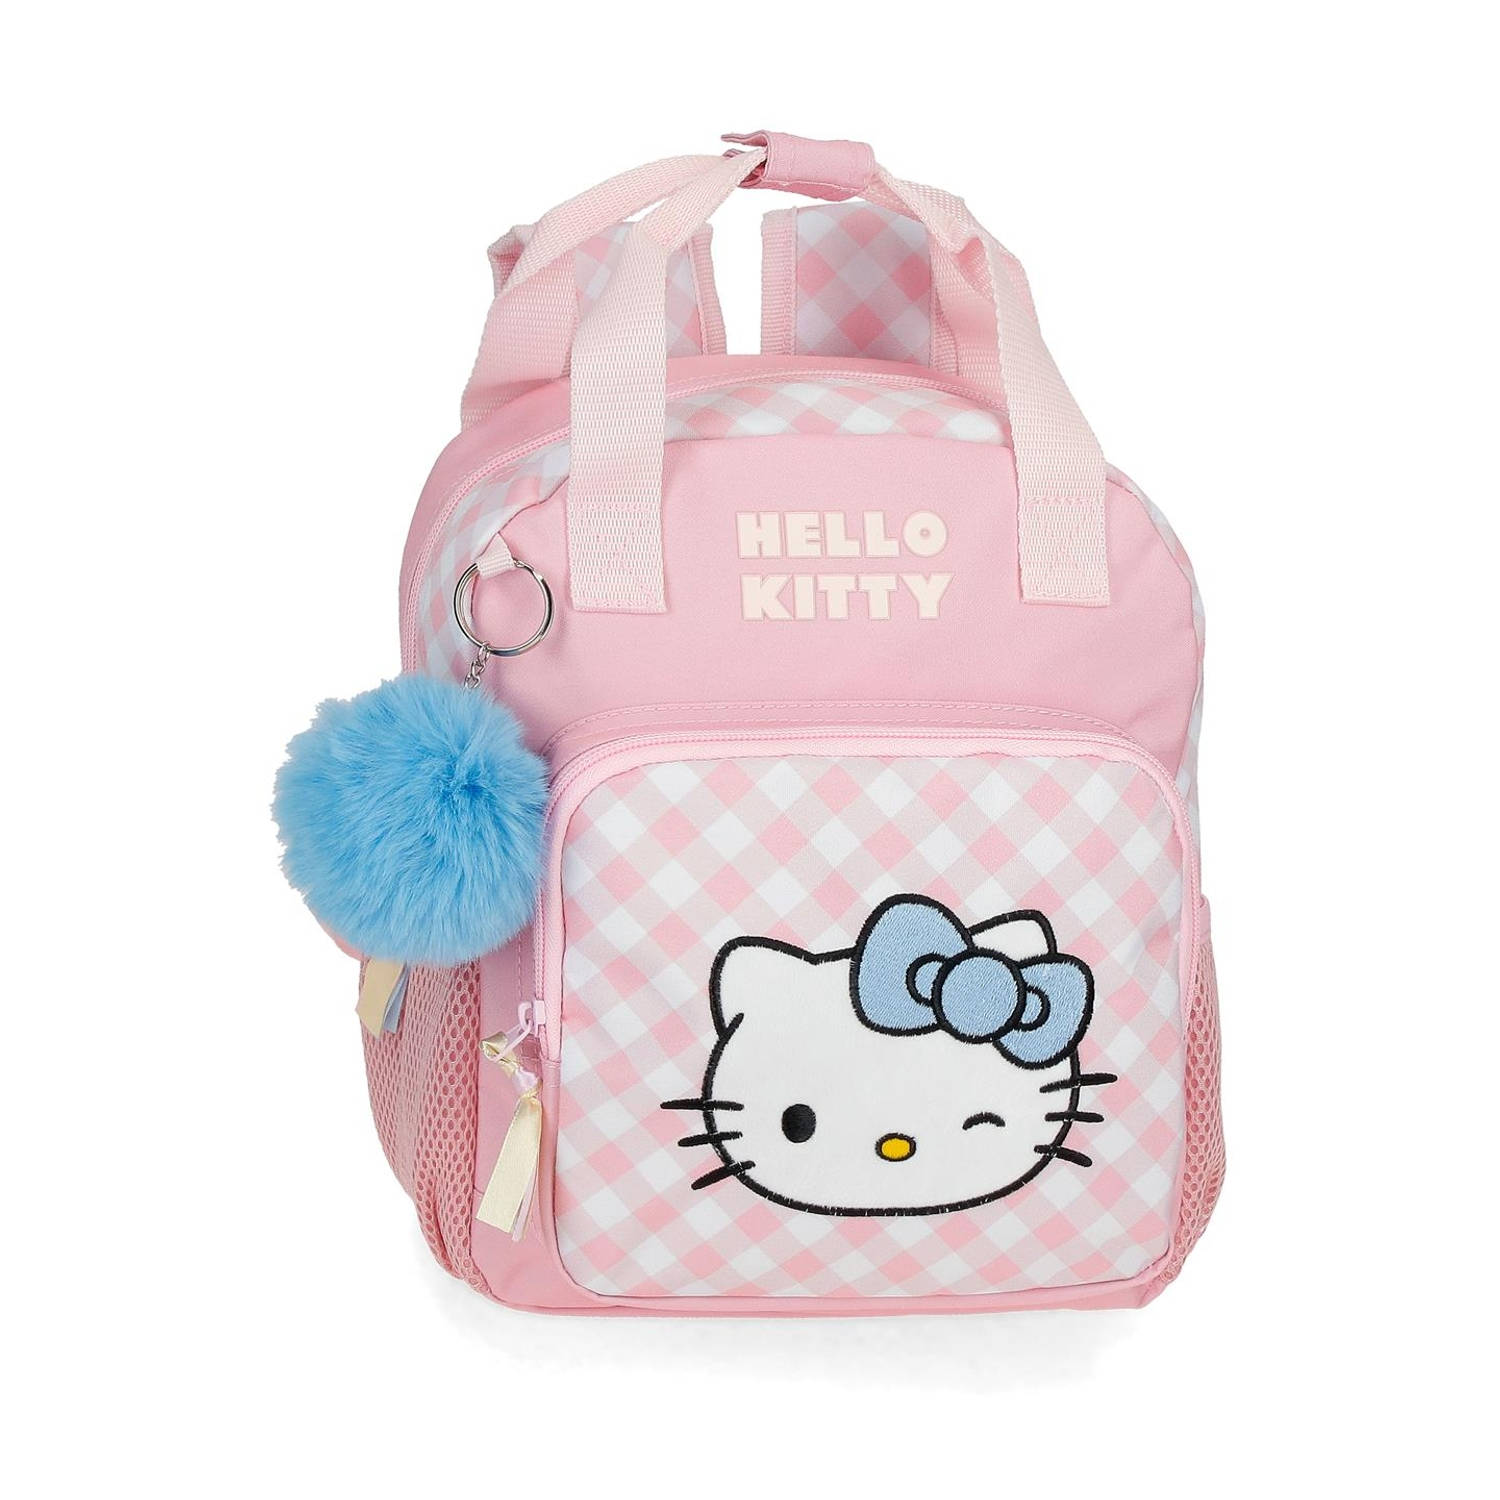 Hello Kitty peuter rugzak roze 28 cm 2 - 3 jaar